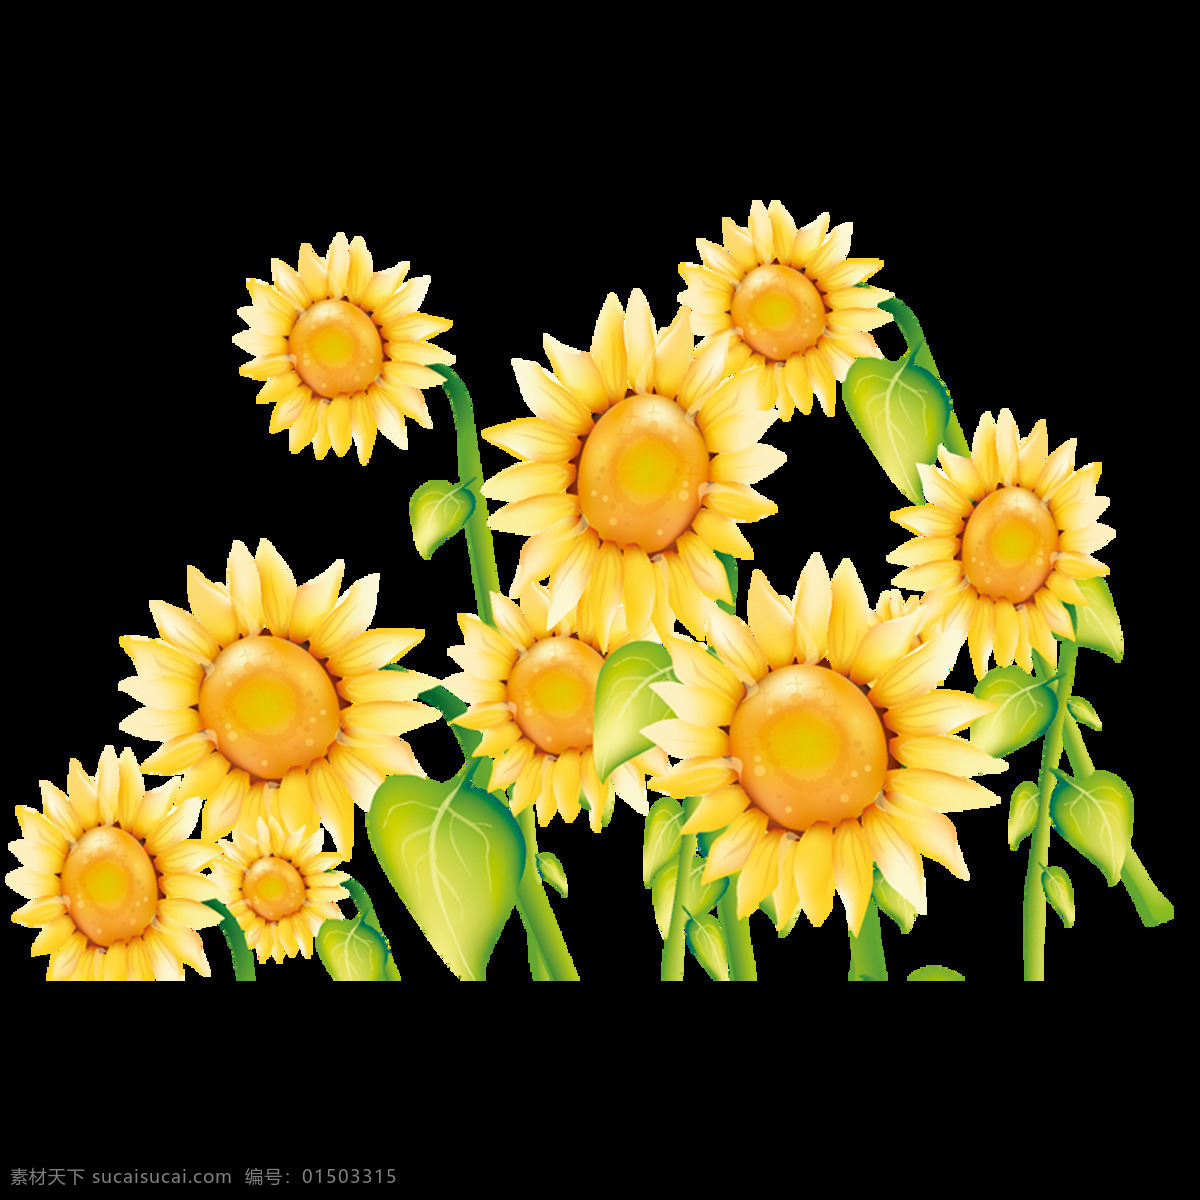 欢度 六一儿童节 花朵 多样向日葵 生动 创意 美观 鲜明